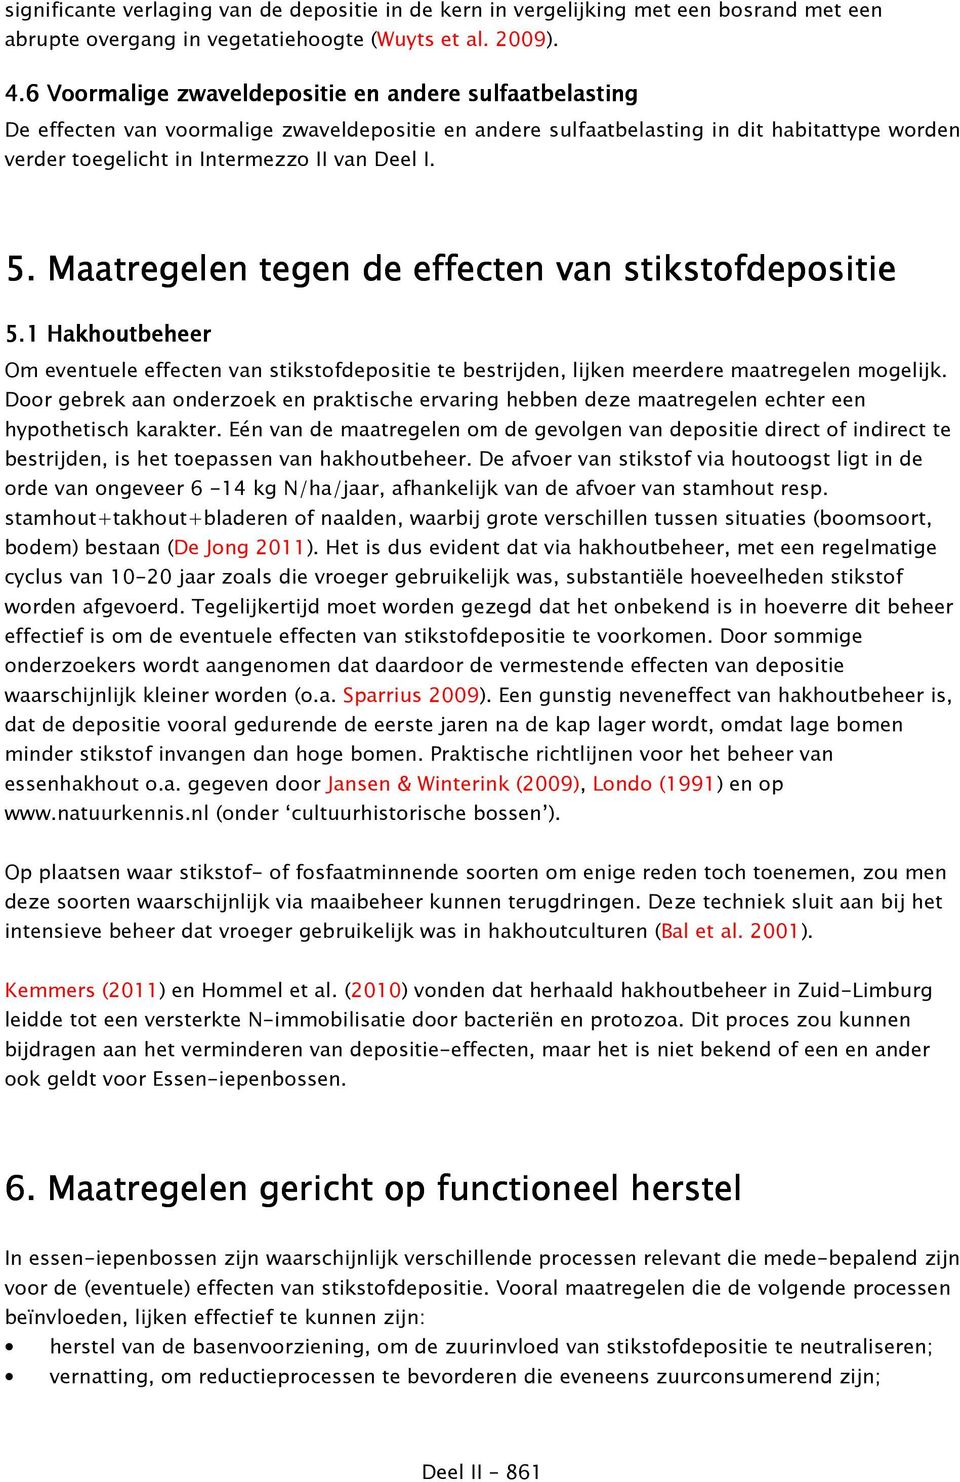 5. Maatregelen tegen de effecten van stikstofdepositie 5.1 Hakhoutbeheer Om eventuele effecten van stikstofdepositie te bestrijden, lijken meerdere maatregelen mogelijk.